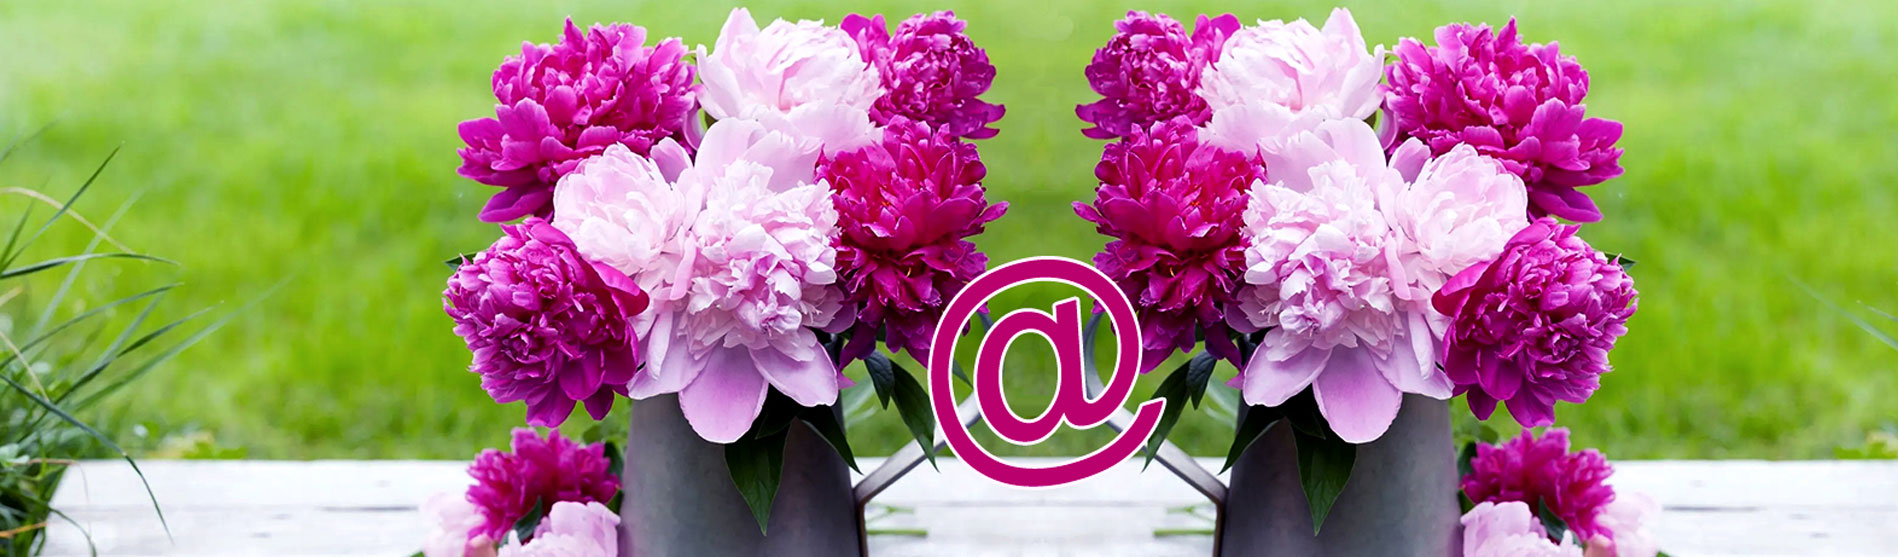 Trouver un site d'e-commerce qui propose des fleurs en bouquets et les végétaux